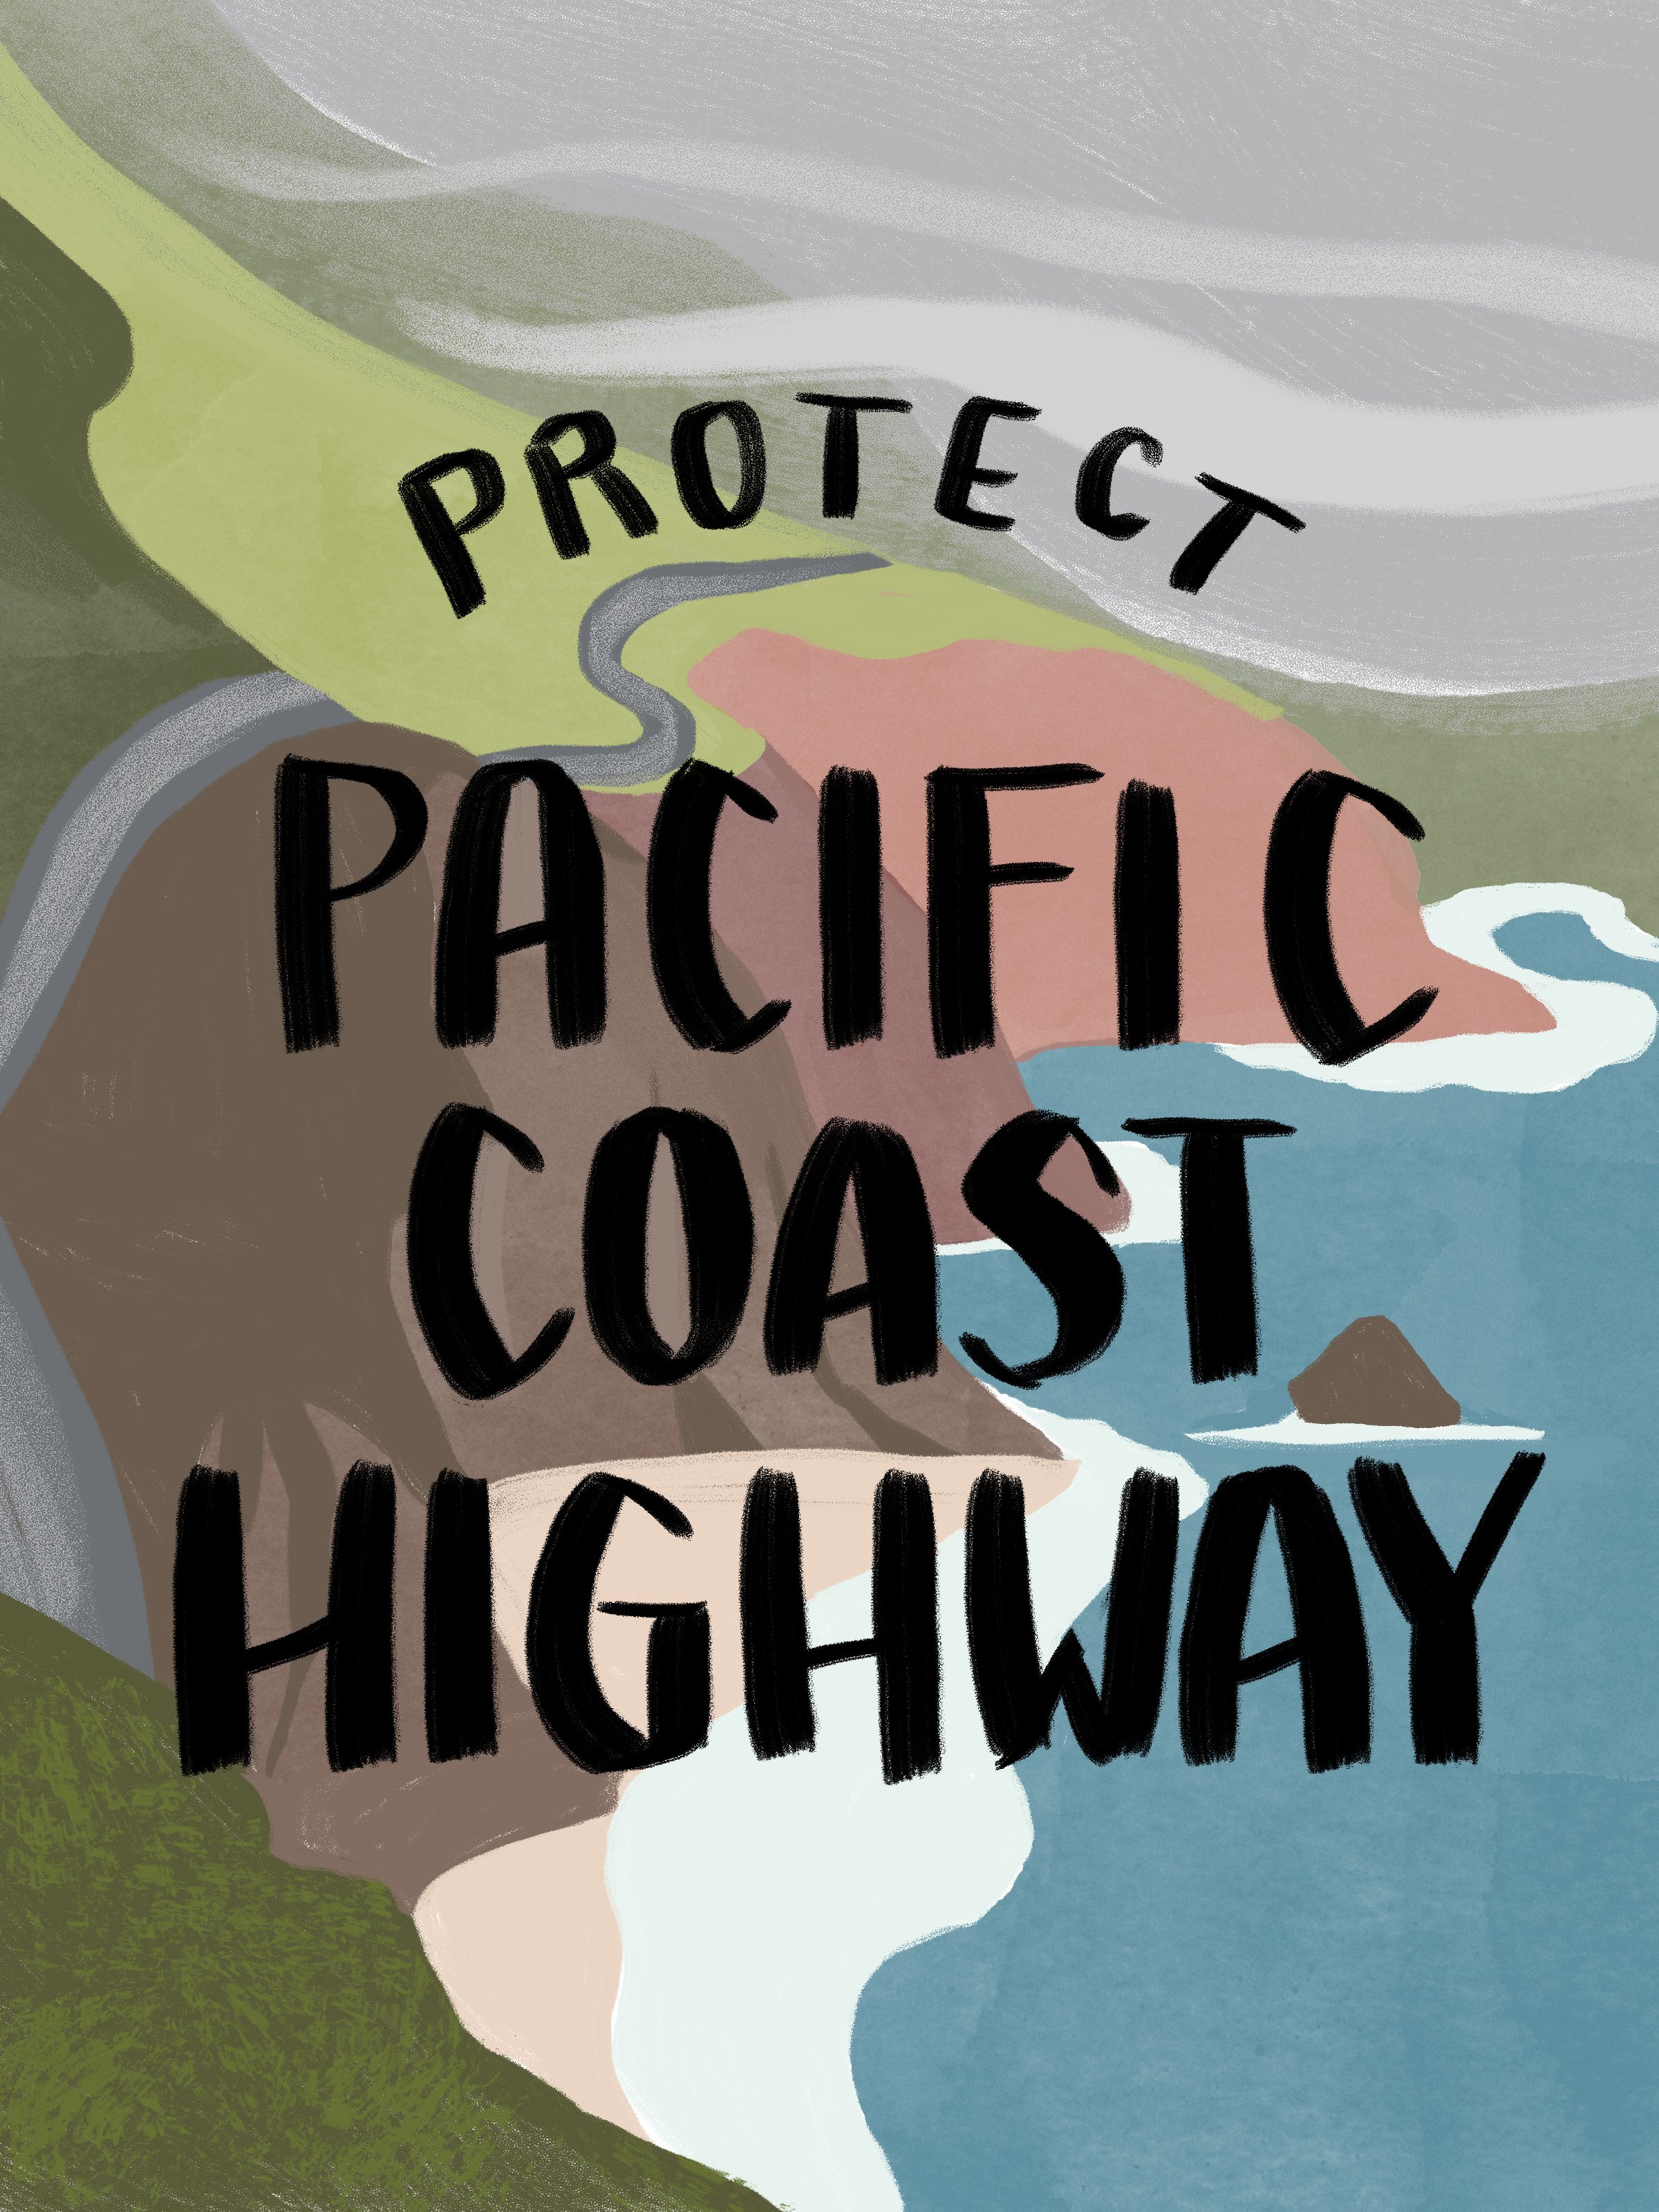 Western Road Trip Stickers- Pacific Coast Highway.jpg